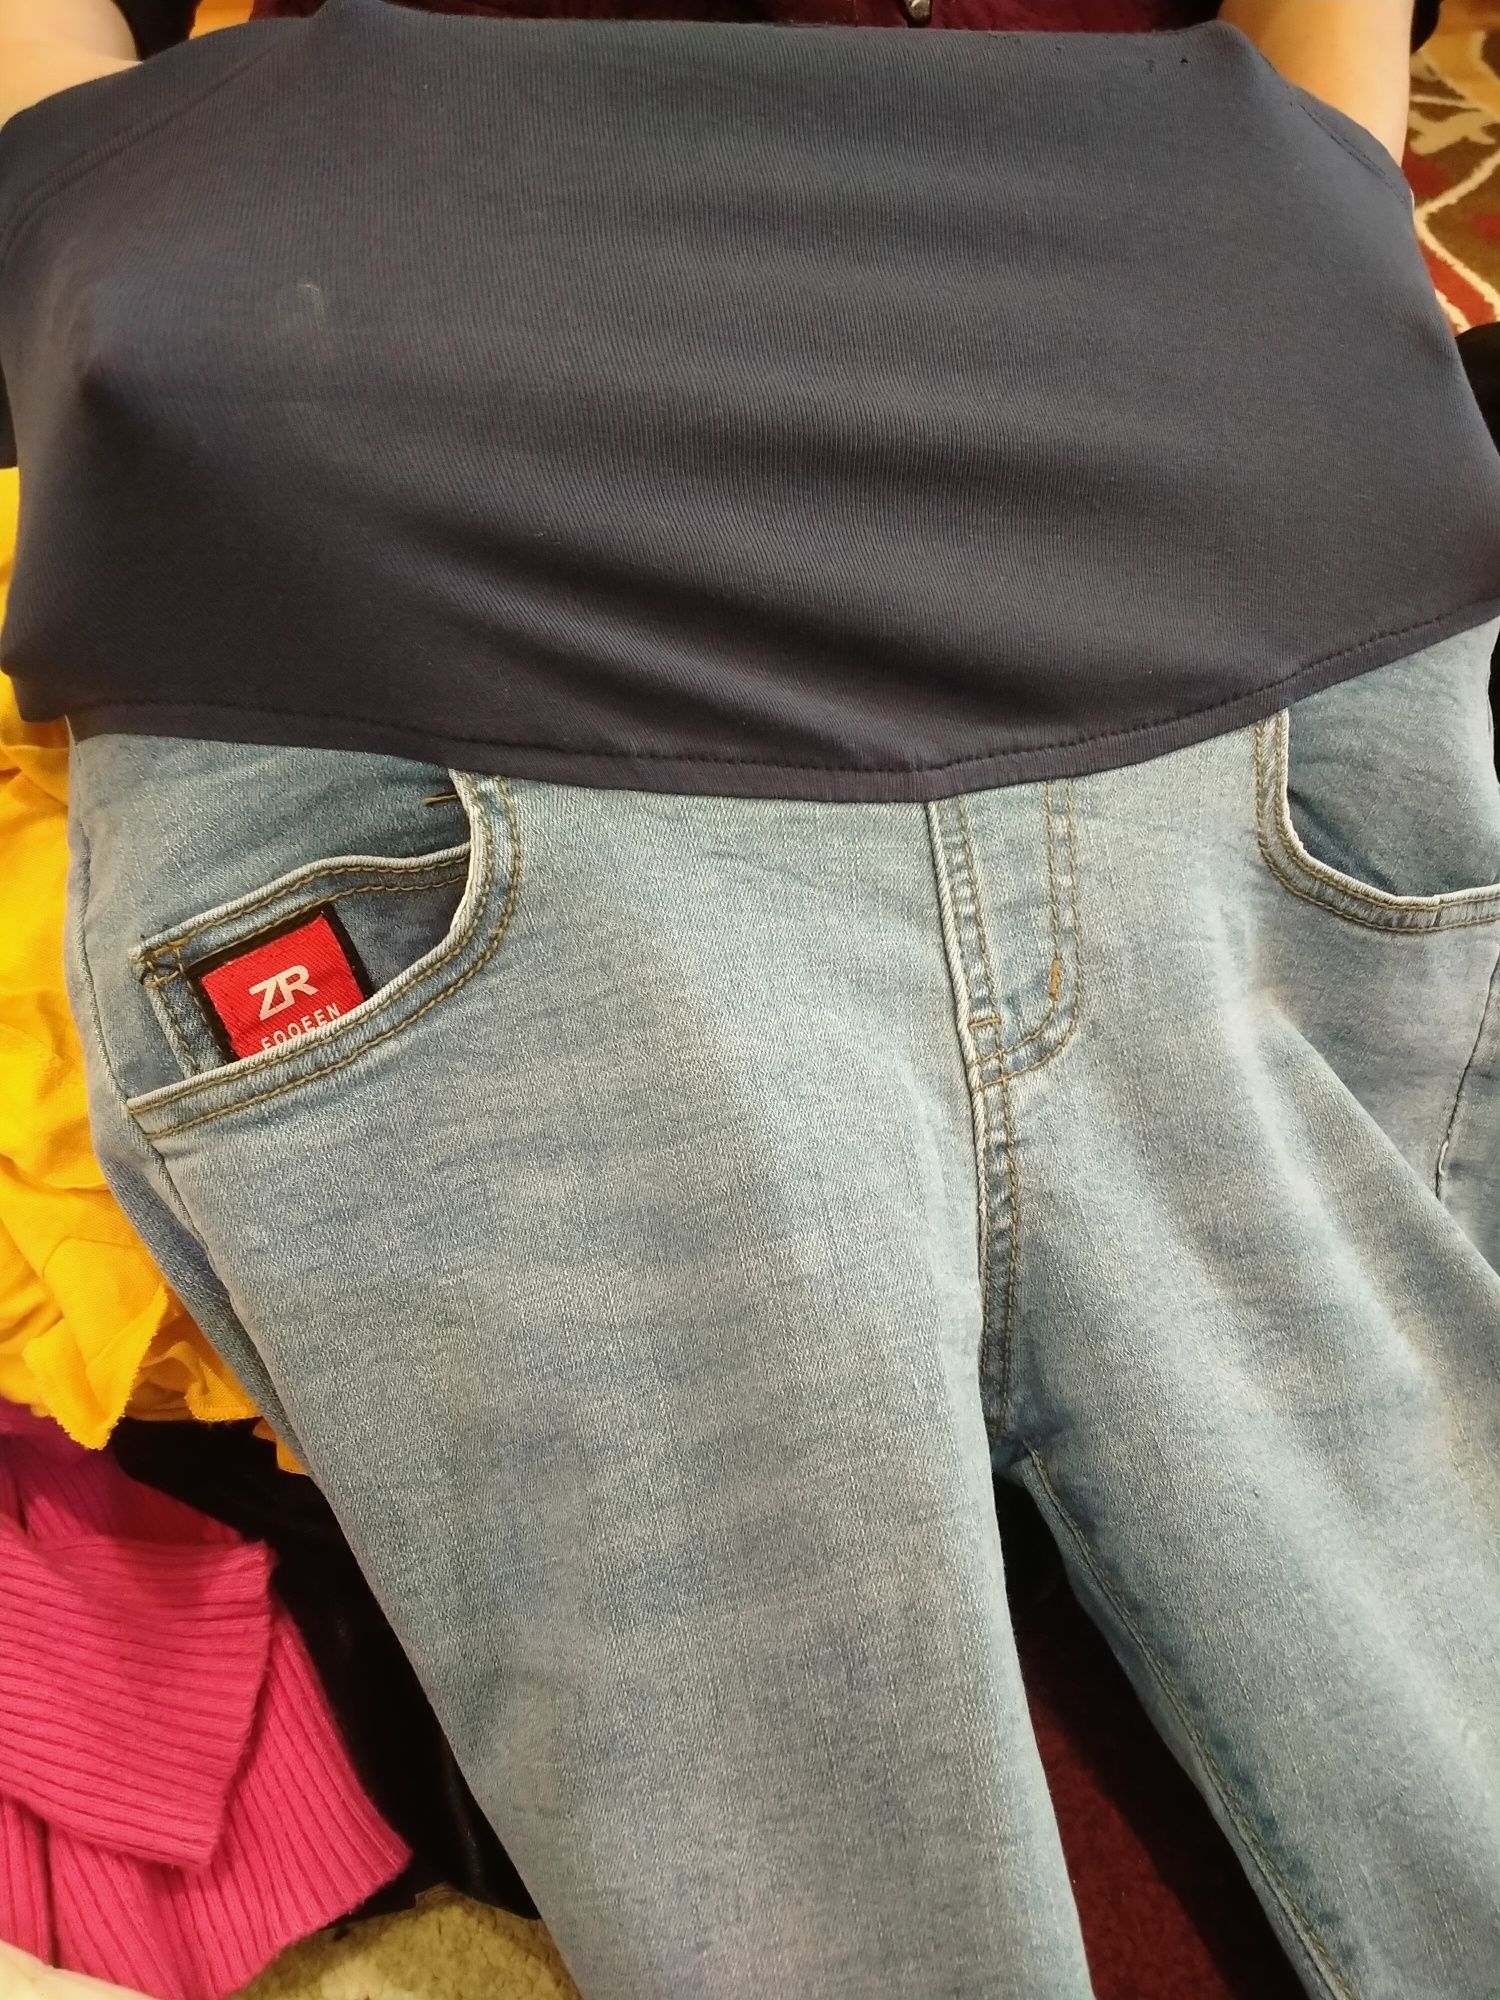 Продаются джинсы для беременных размер 44-46. Новый даже не одели.